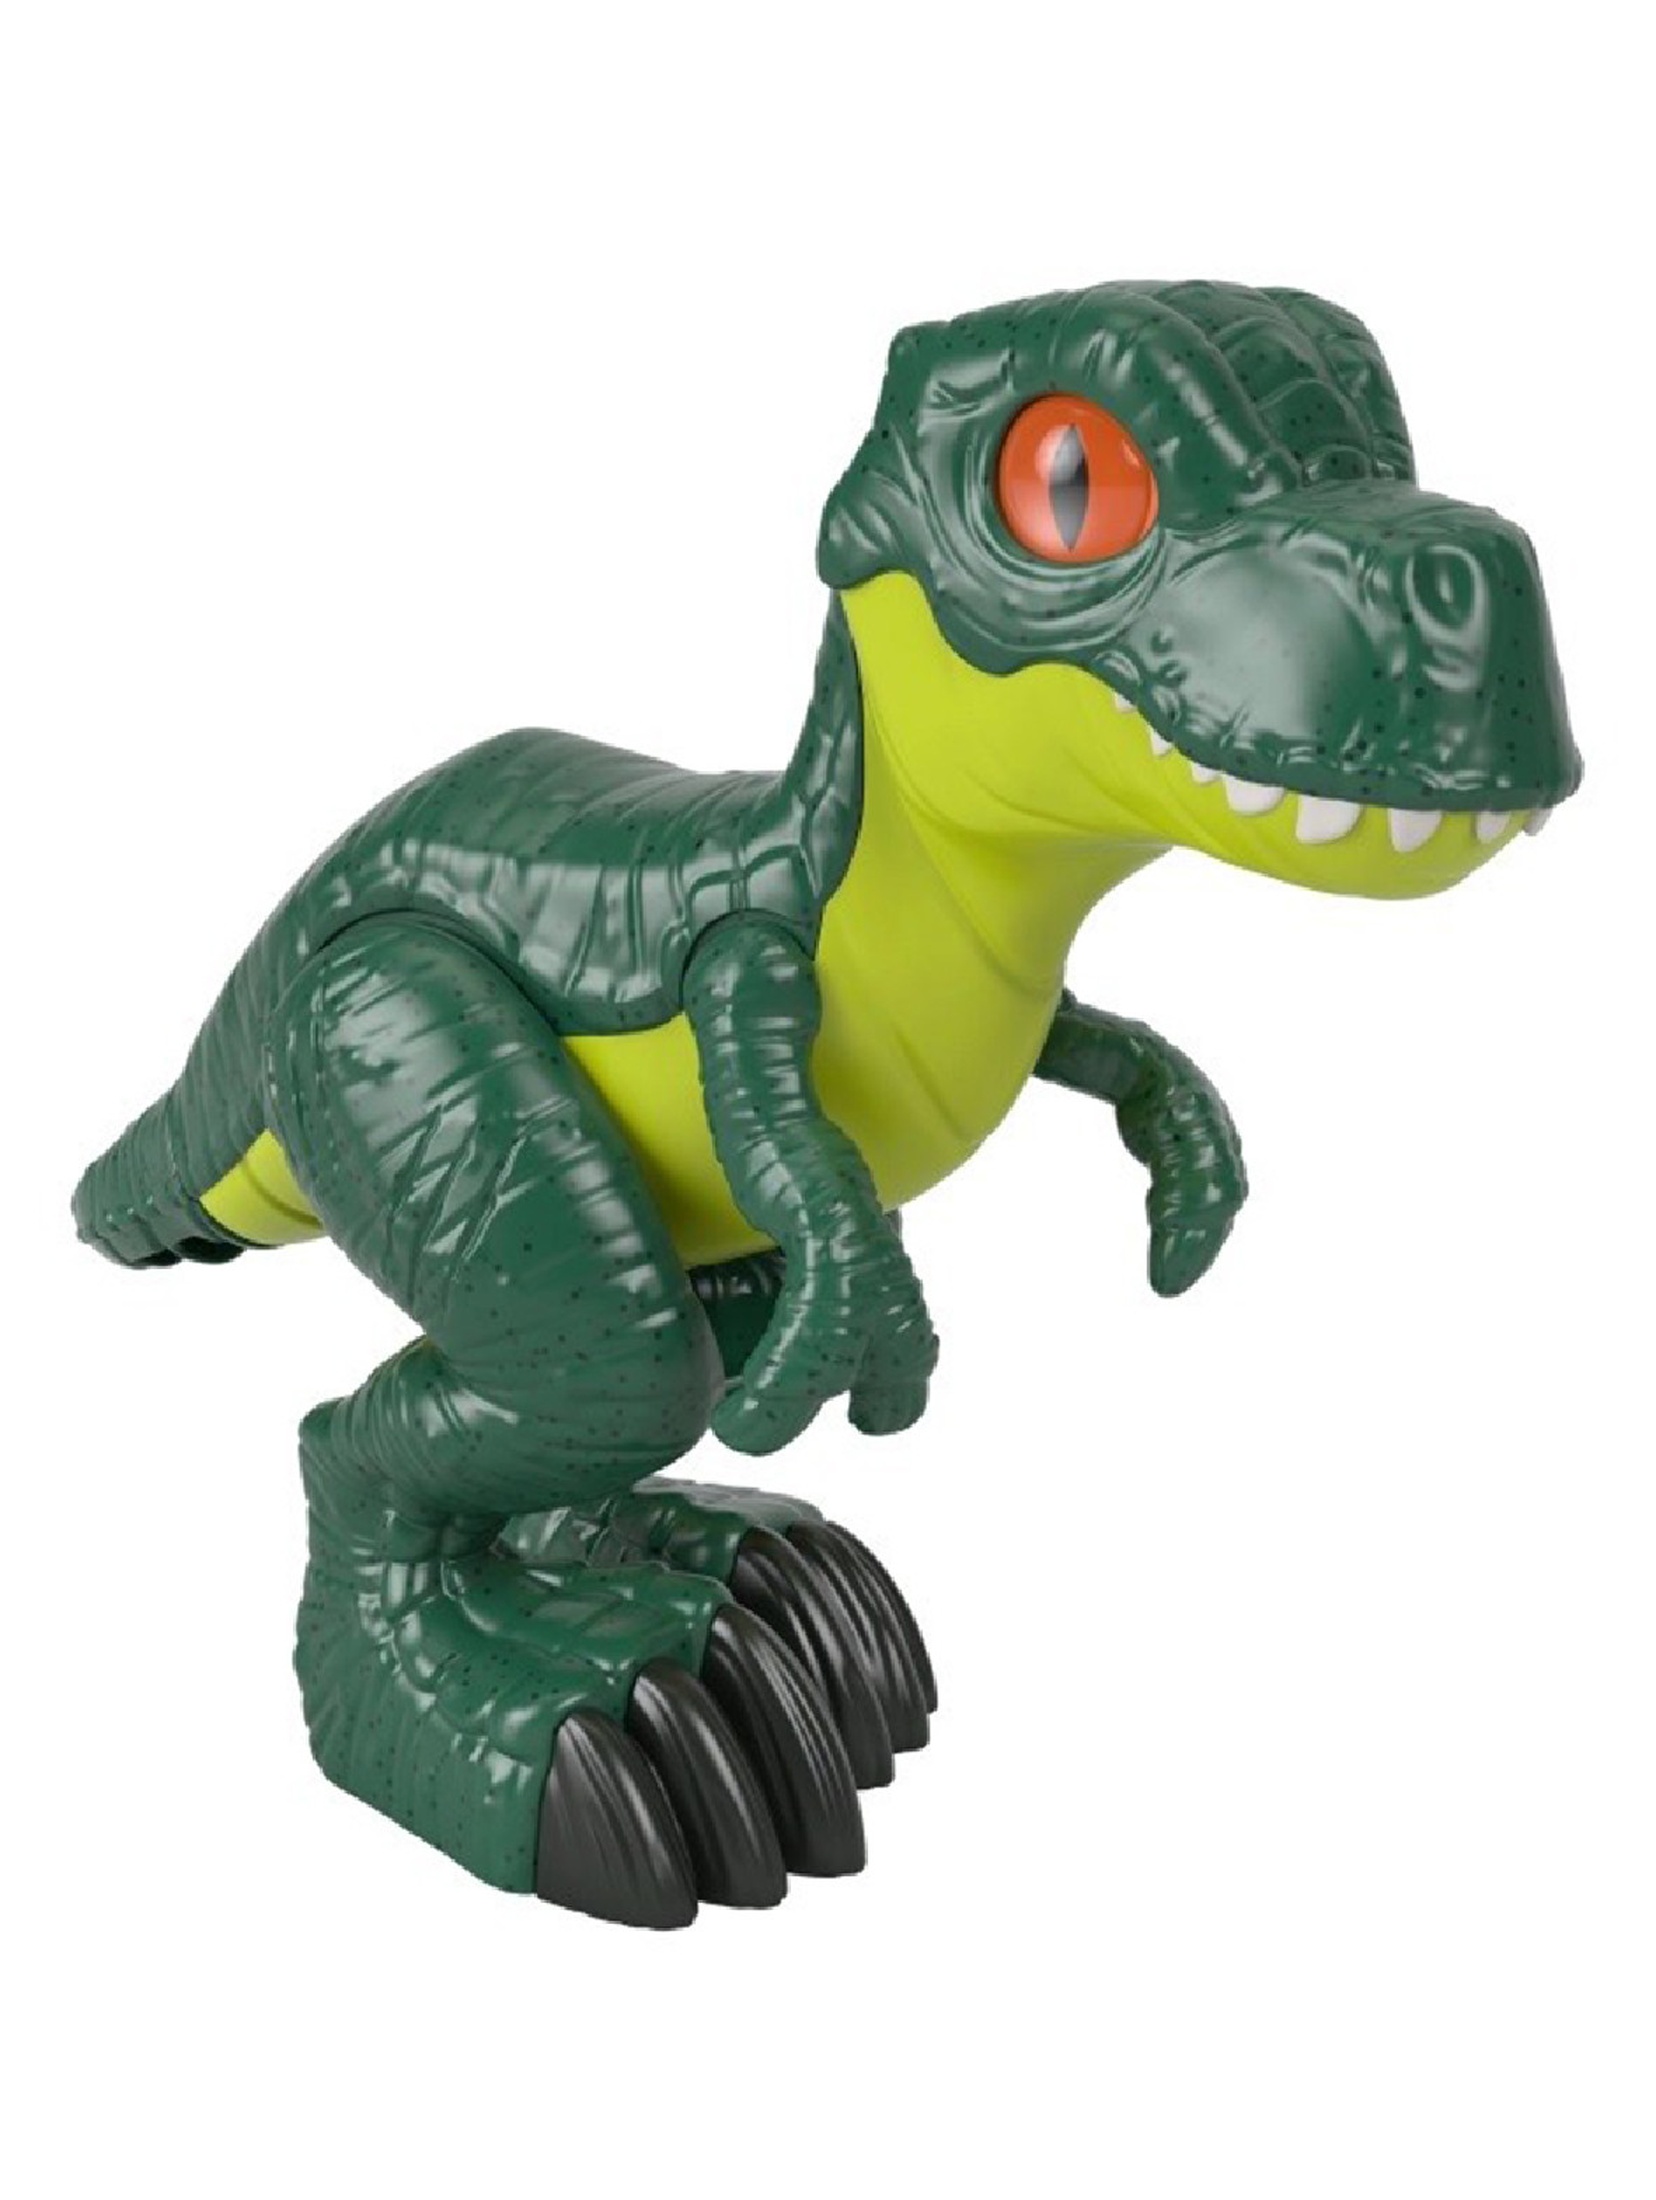 Figurka Imaginext Jurassic World- dinozaur T-Rex XL